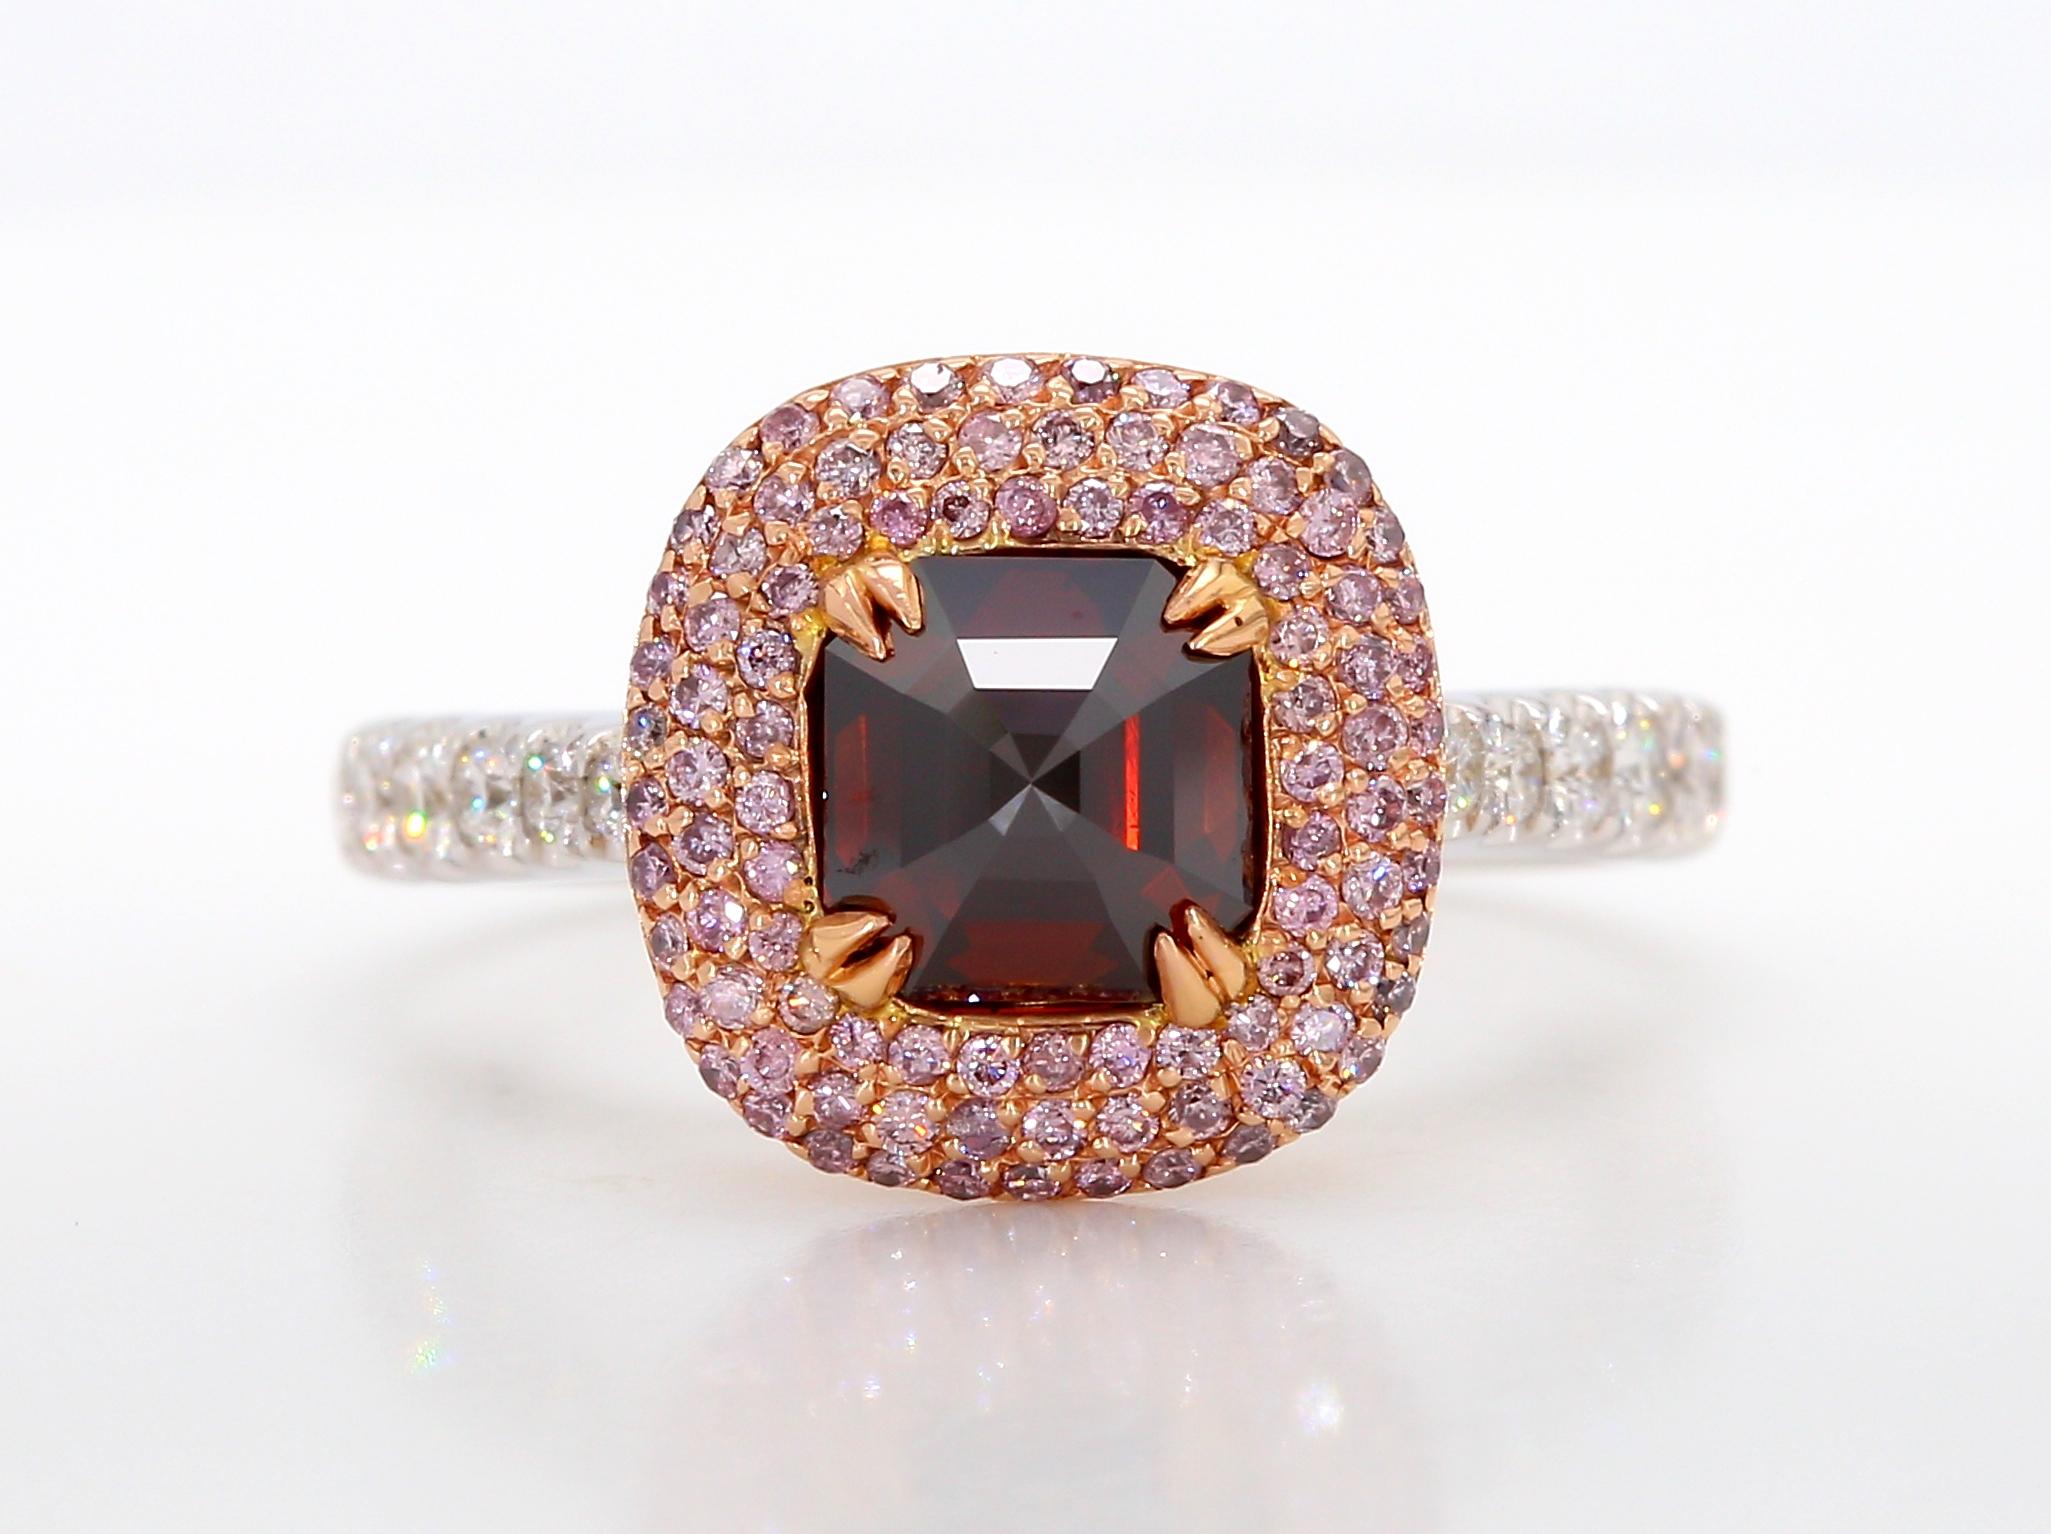 Ce style de bague de fiançailles exceptionnel est orné d'un diamant unique de plus de 1 carat, certifié par la GIA et taillé en émeraude rouge-brun de couleur fantaisie, d'une pureté de I1. Il est magnifiquement niché dans un pavage de diamants